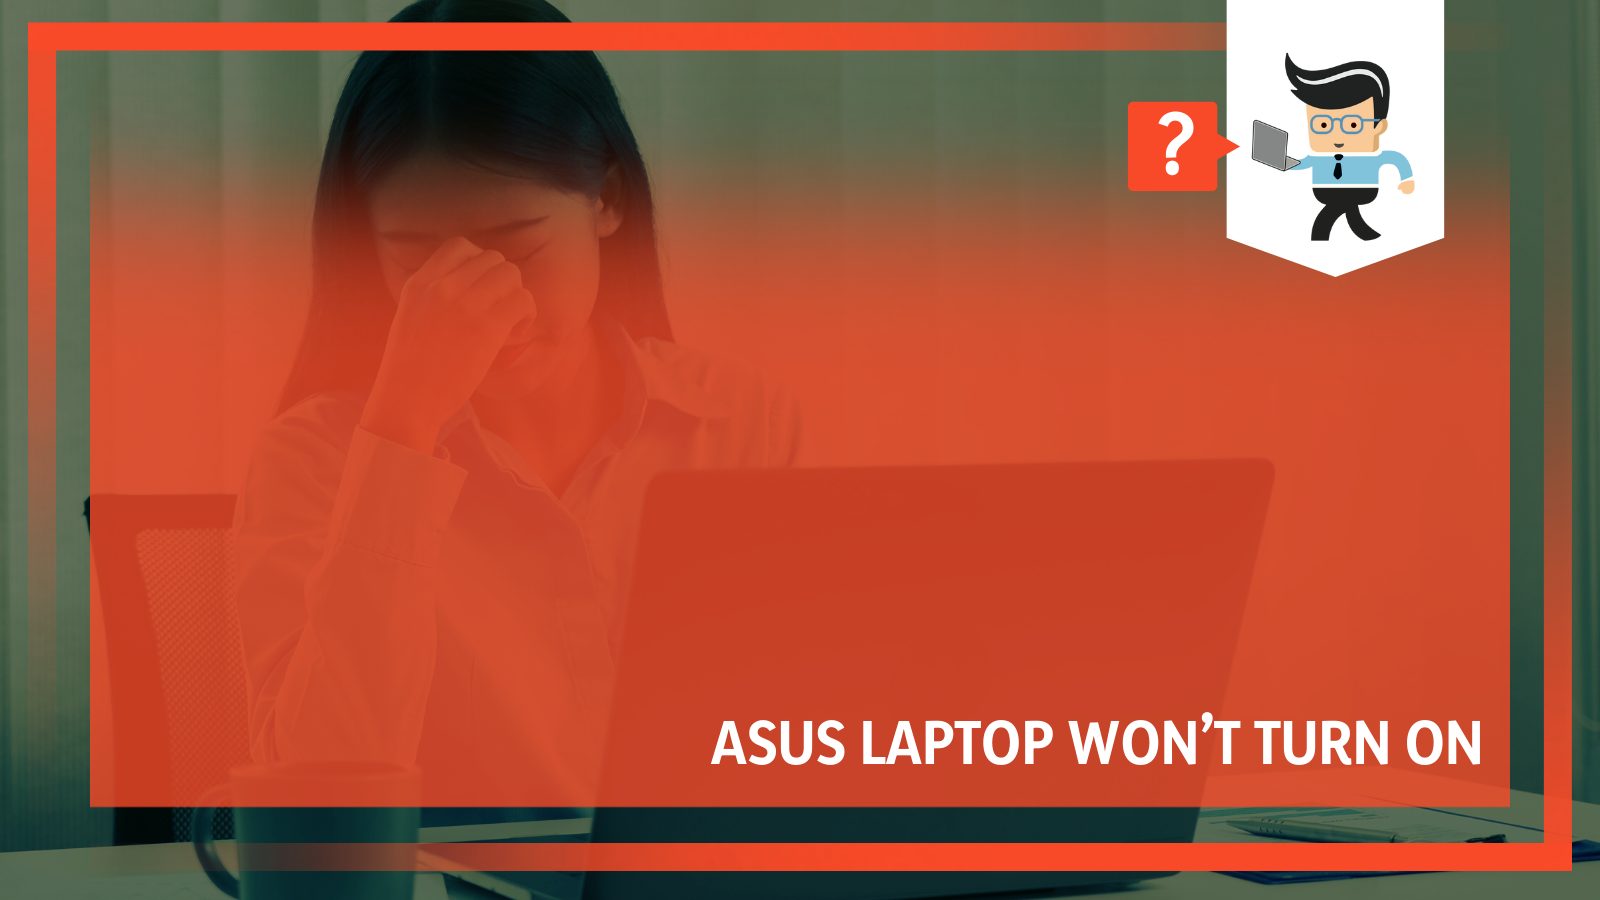 Asus laptop not turning on